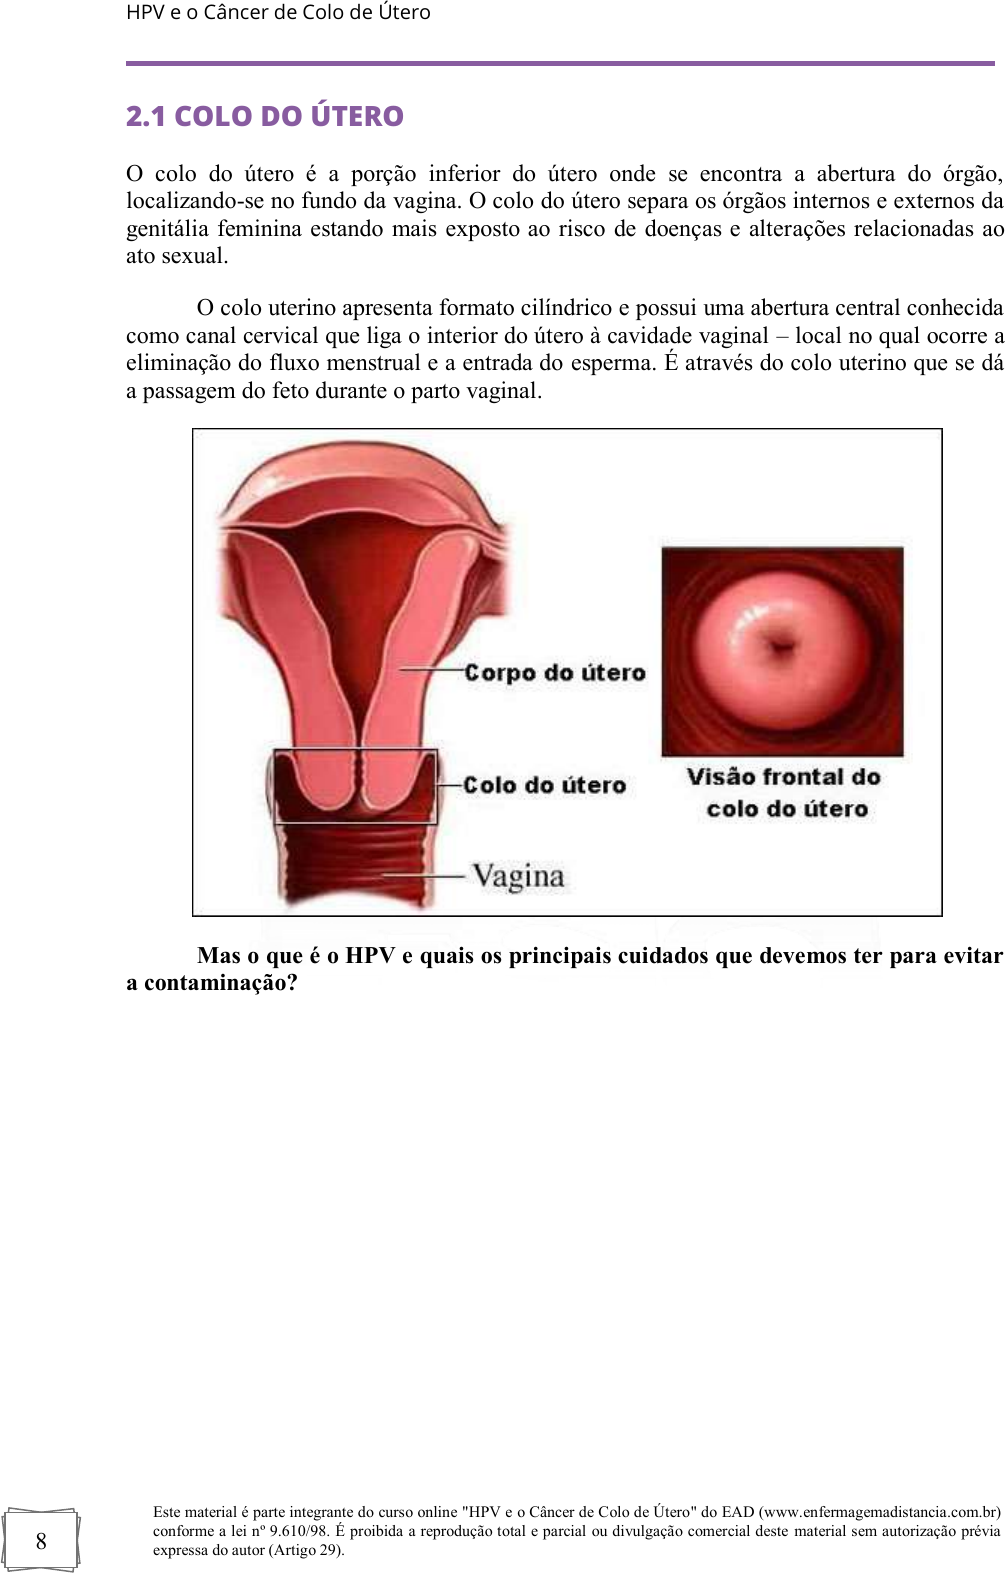 apostila do curso atualizacao em hpv e o cancer de colo de utero